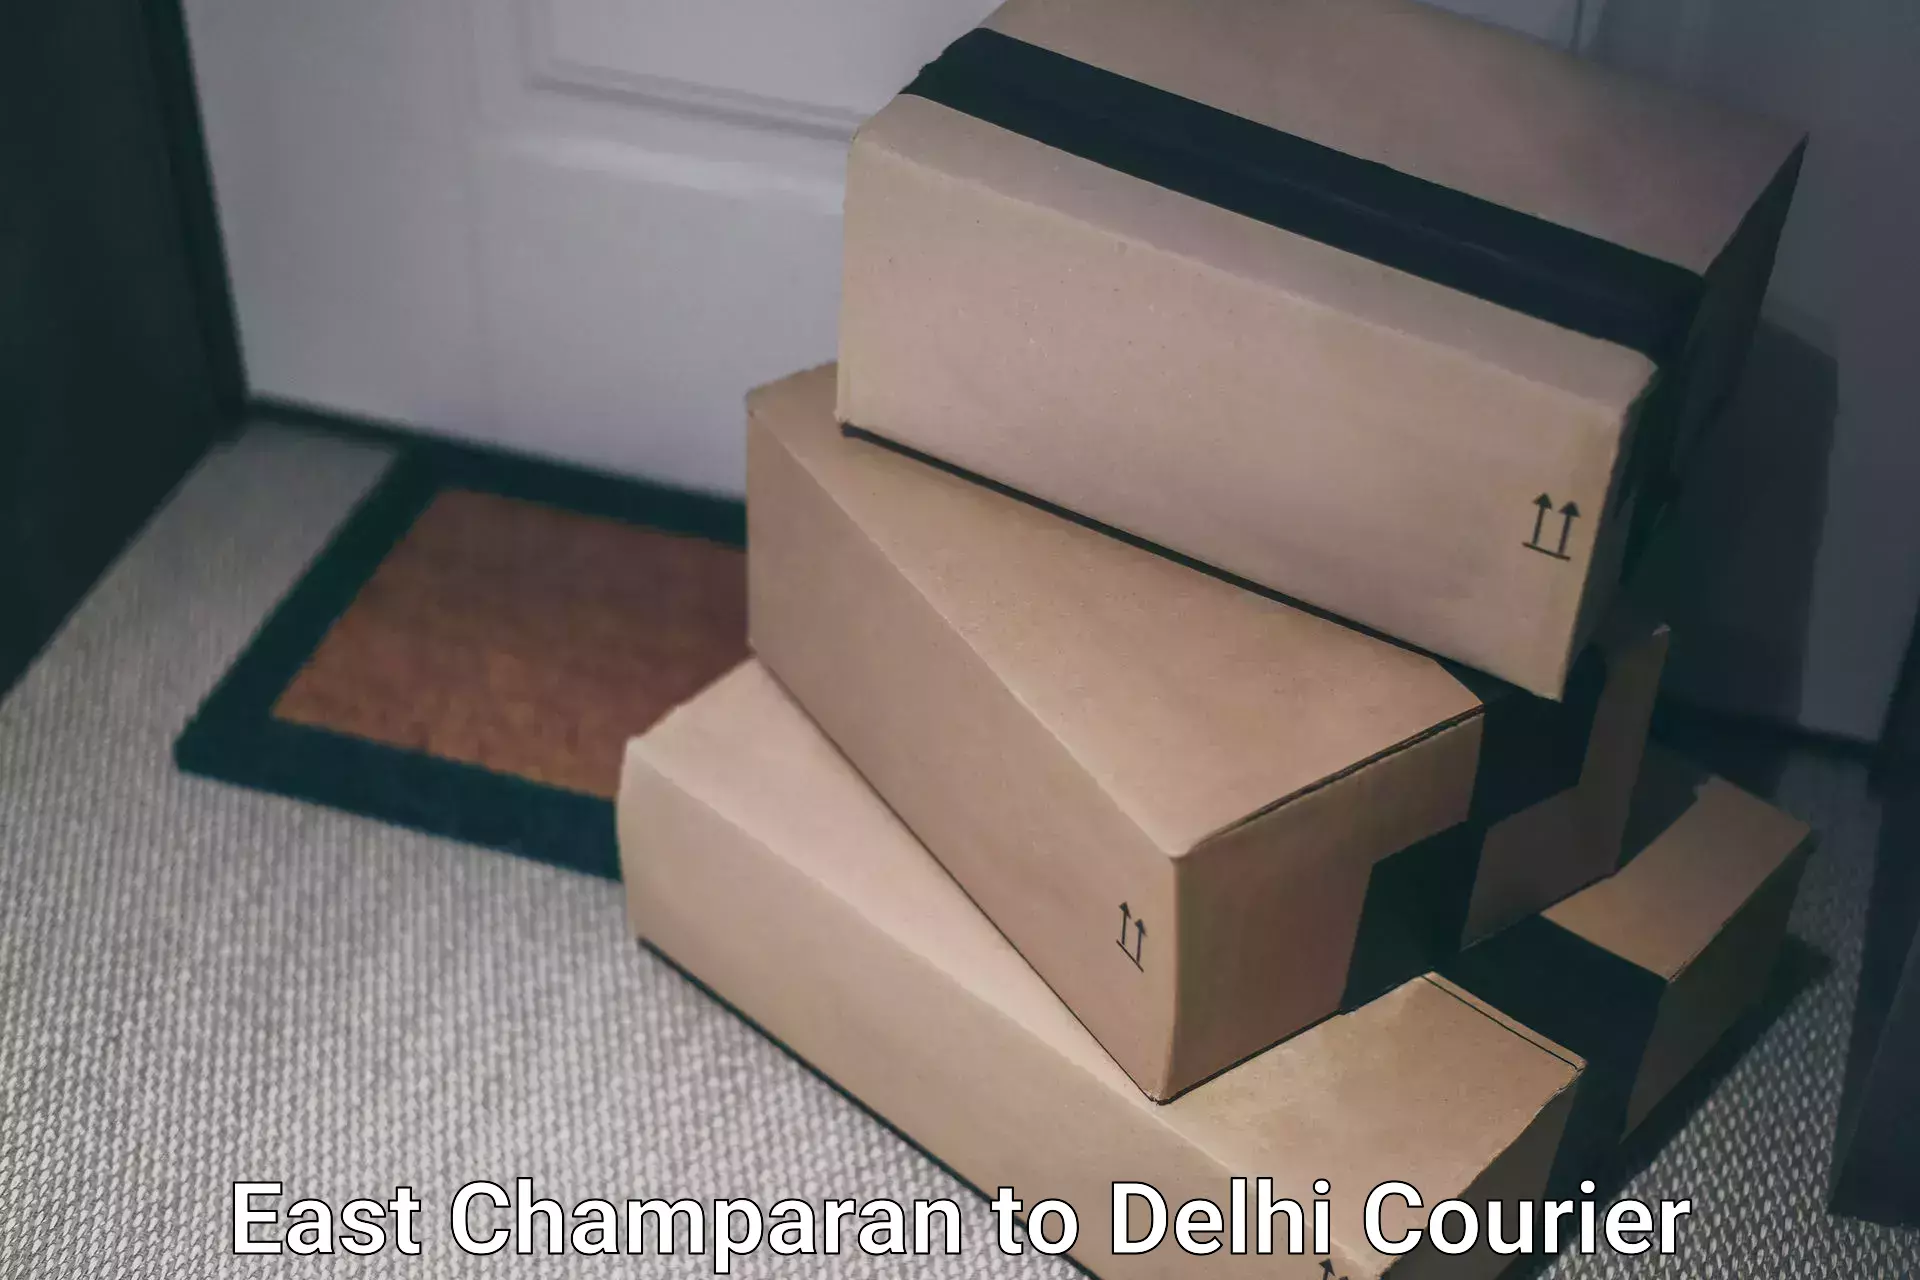 Business delivery service East Champaran to Jamia Millia Islamia New Delhi